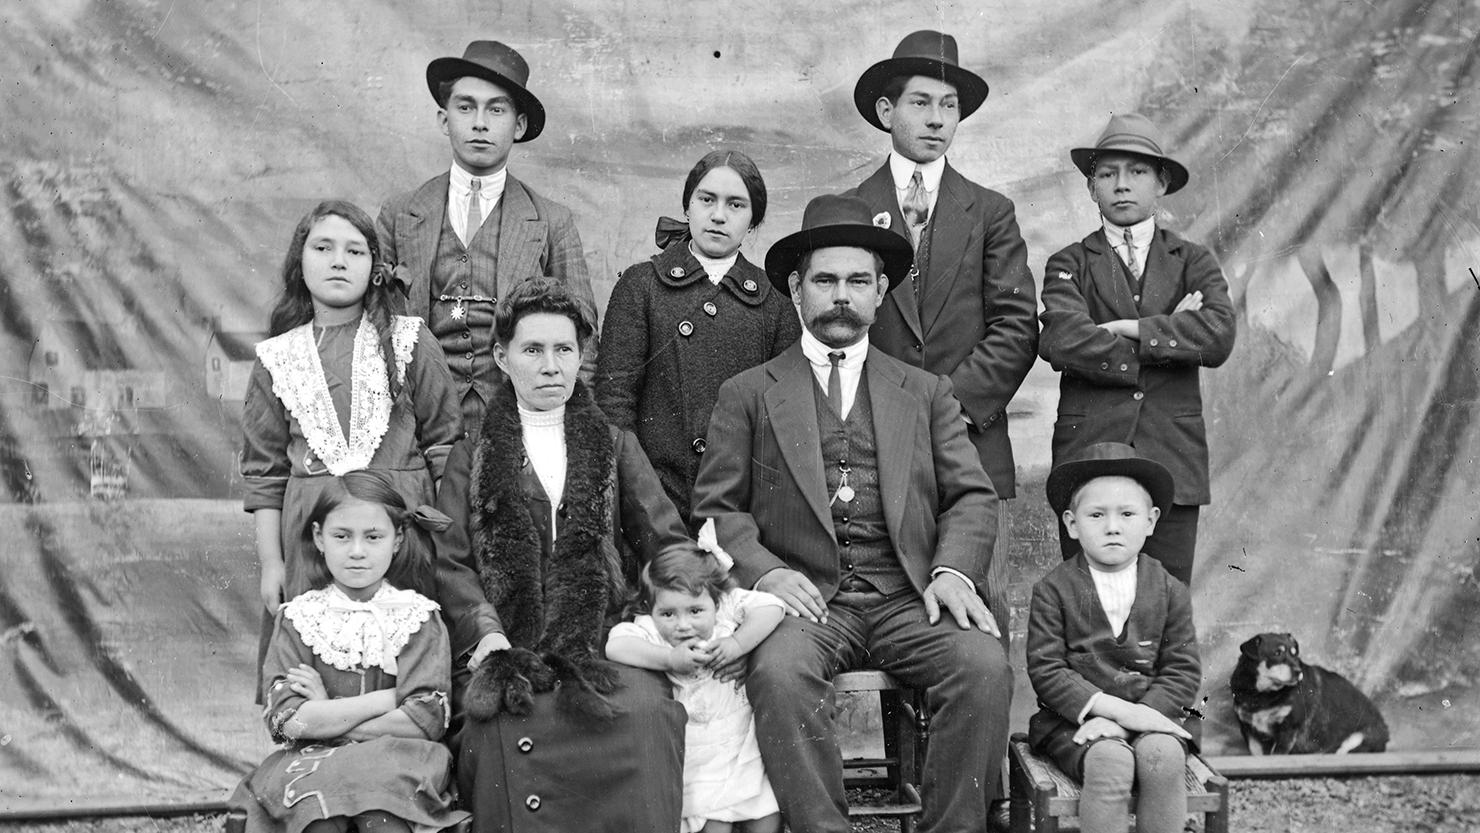 Retrato familia Rivas Núñez (c. 1915)